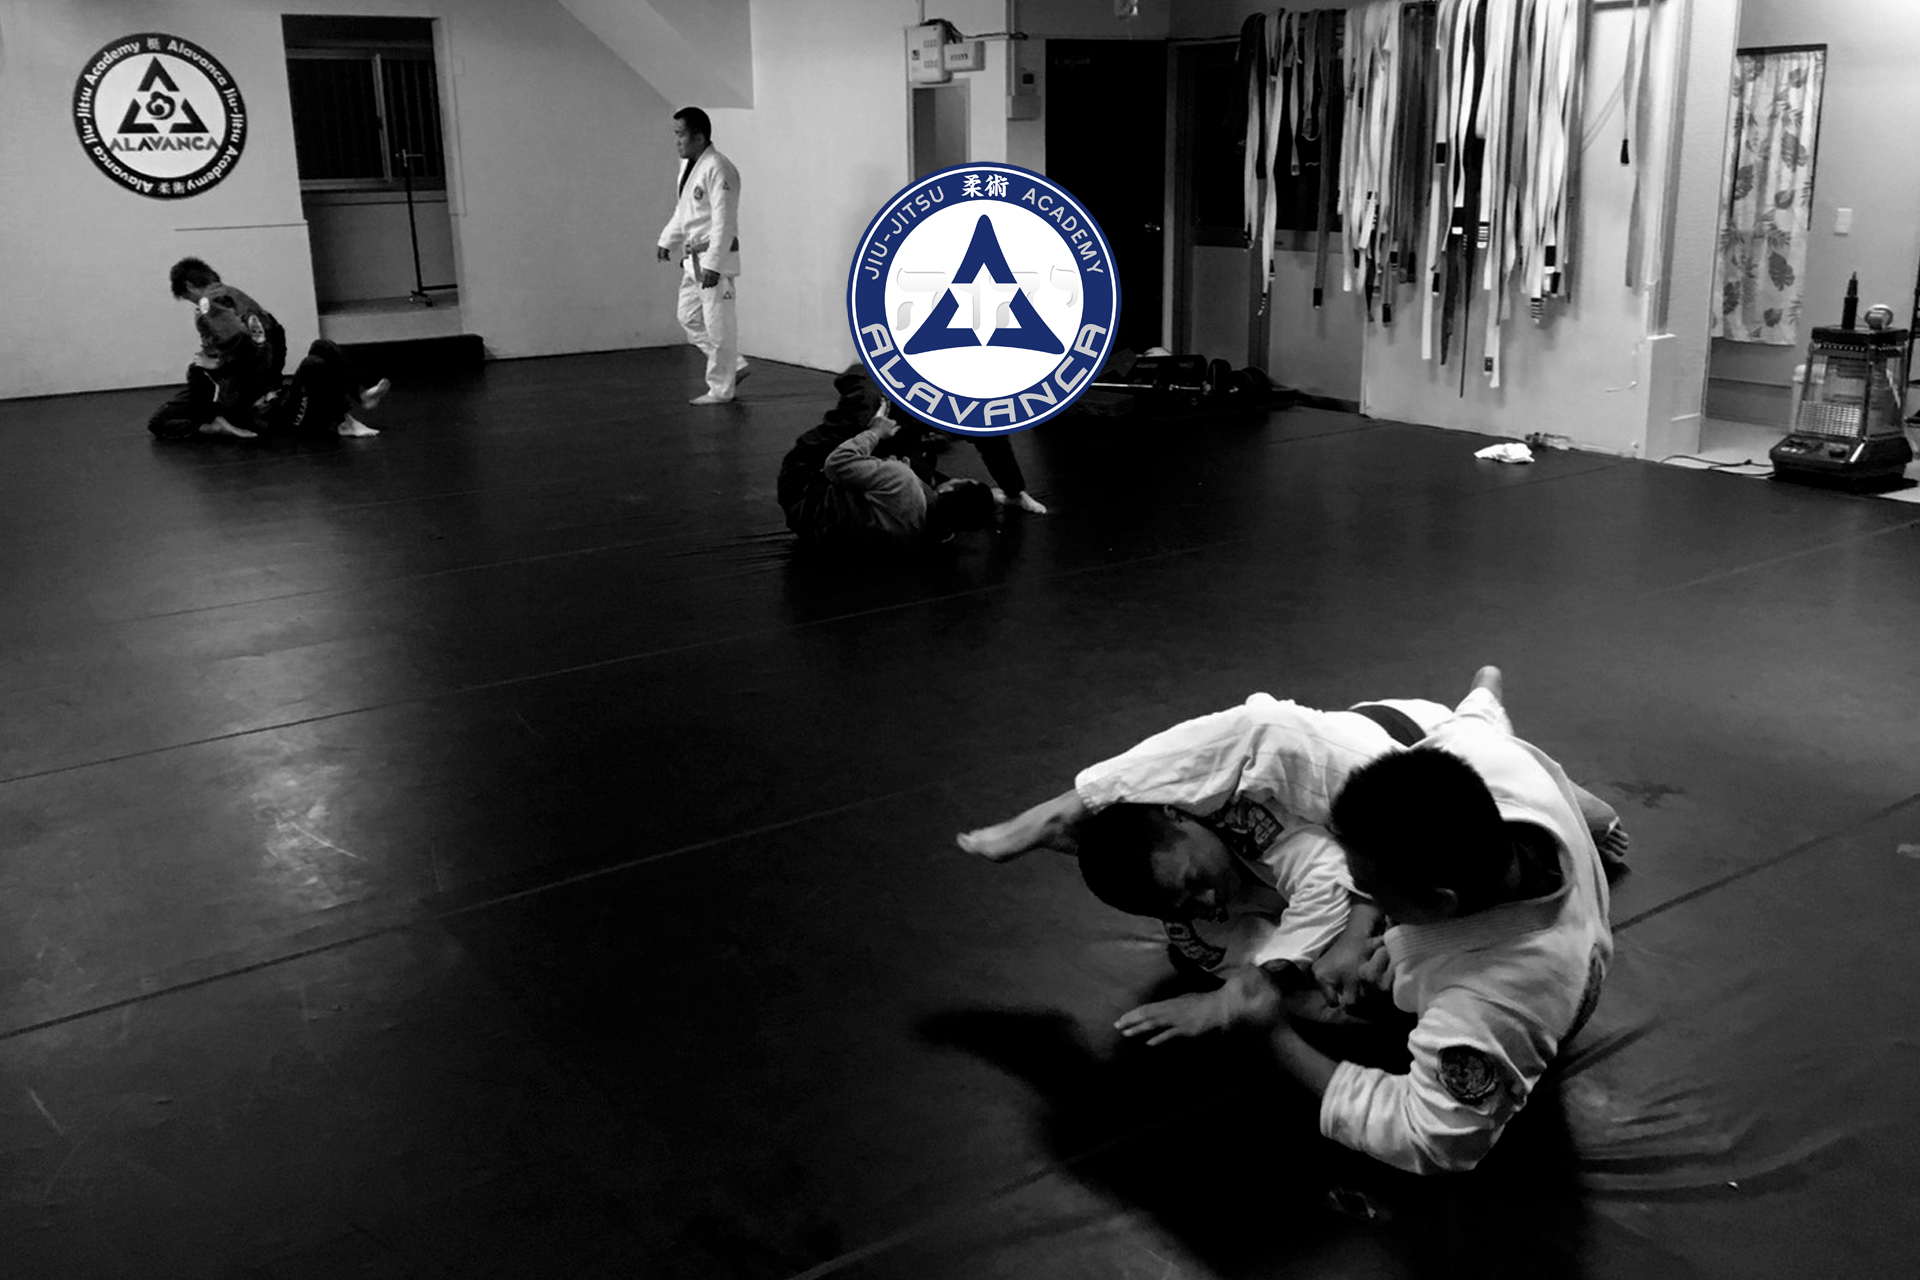 Alavanca Jiu-Jitsu Academy / アラバンカ 柔術アカデミー